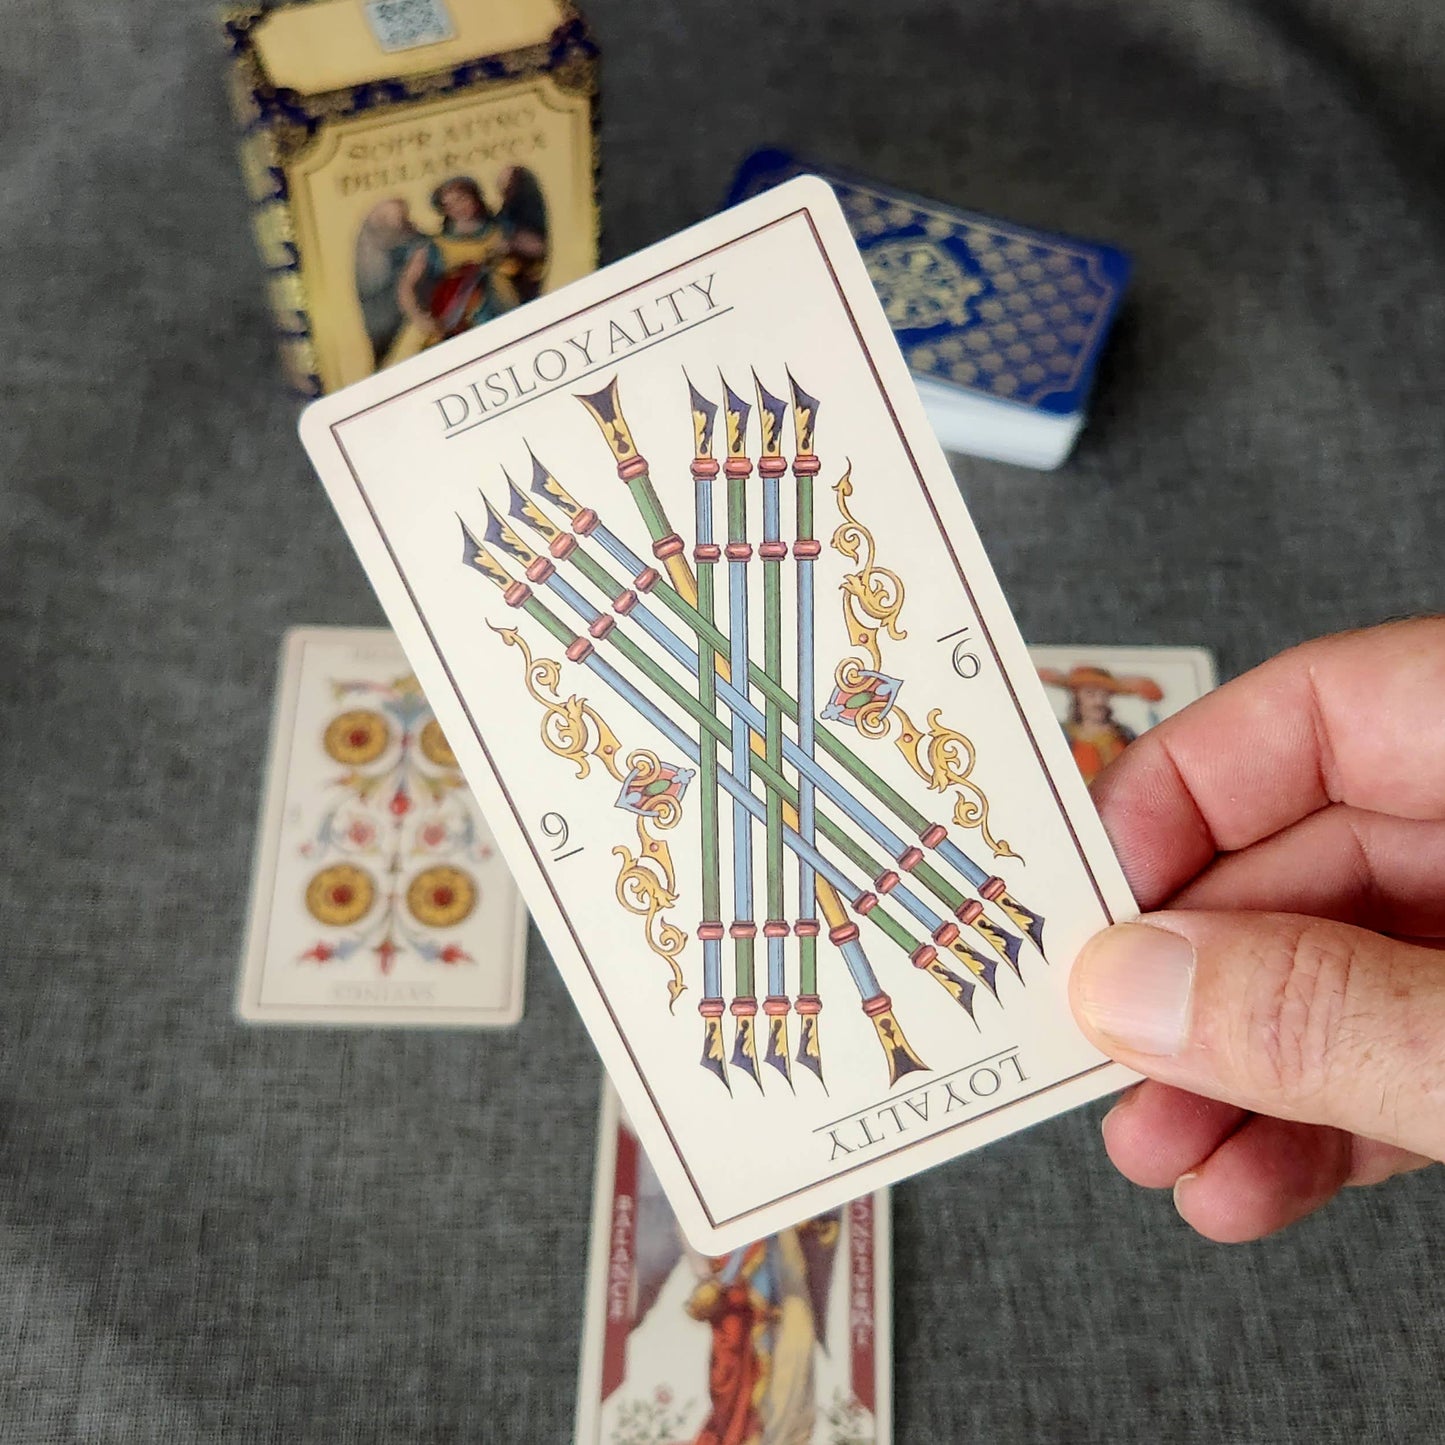 Soprafino Dellarocca Tarot Cards Deck